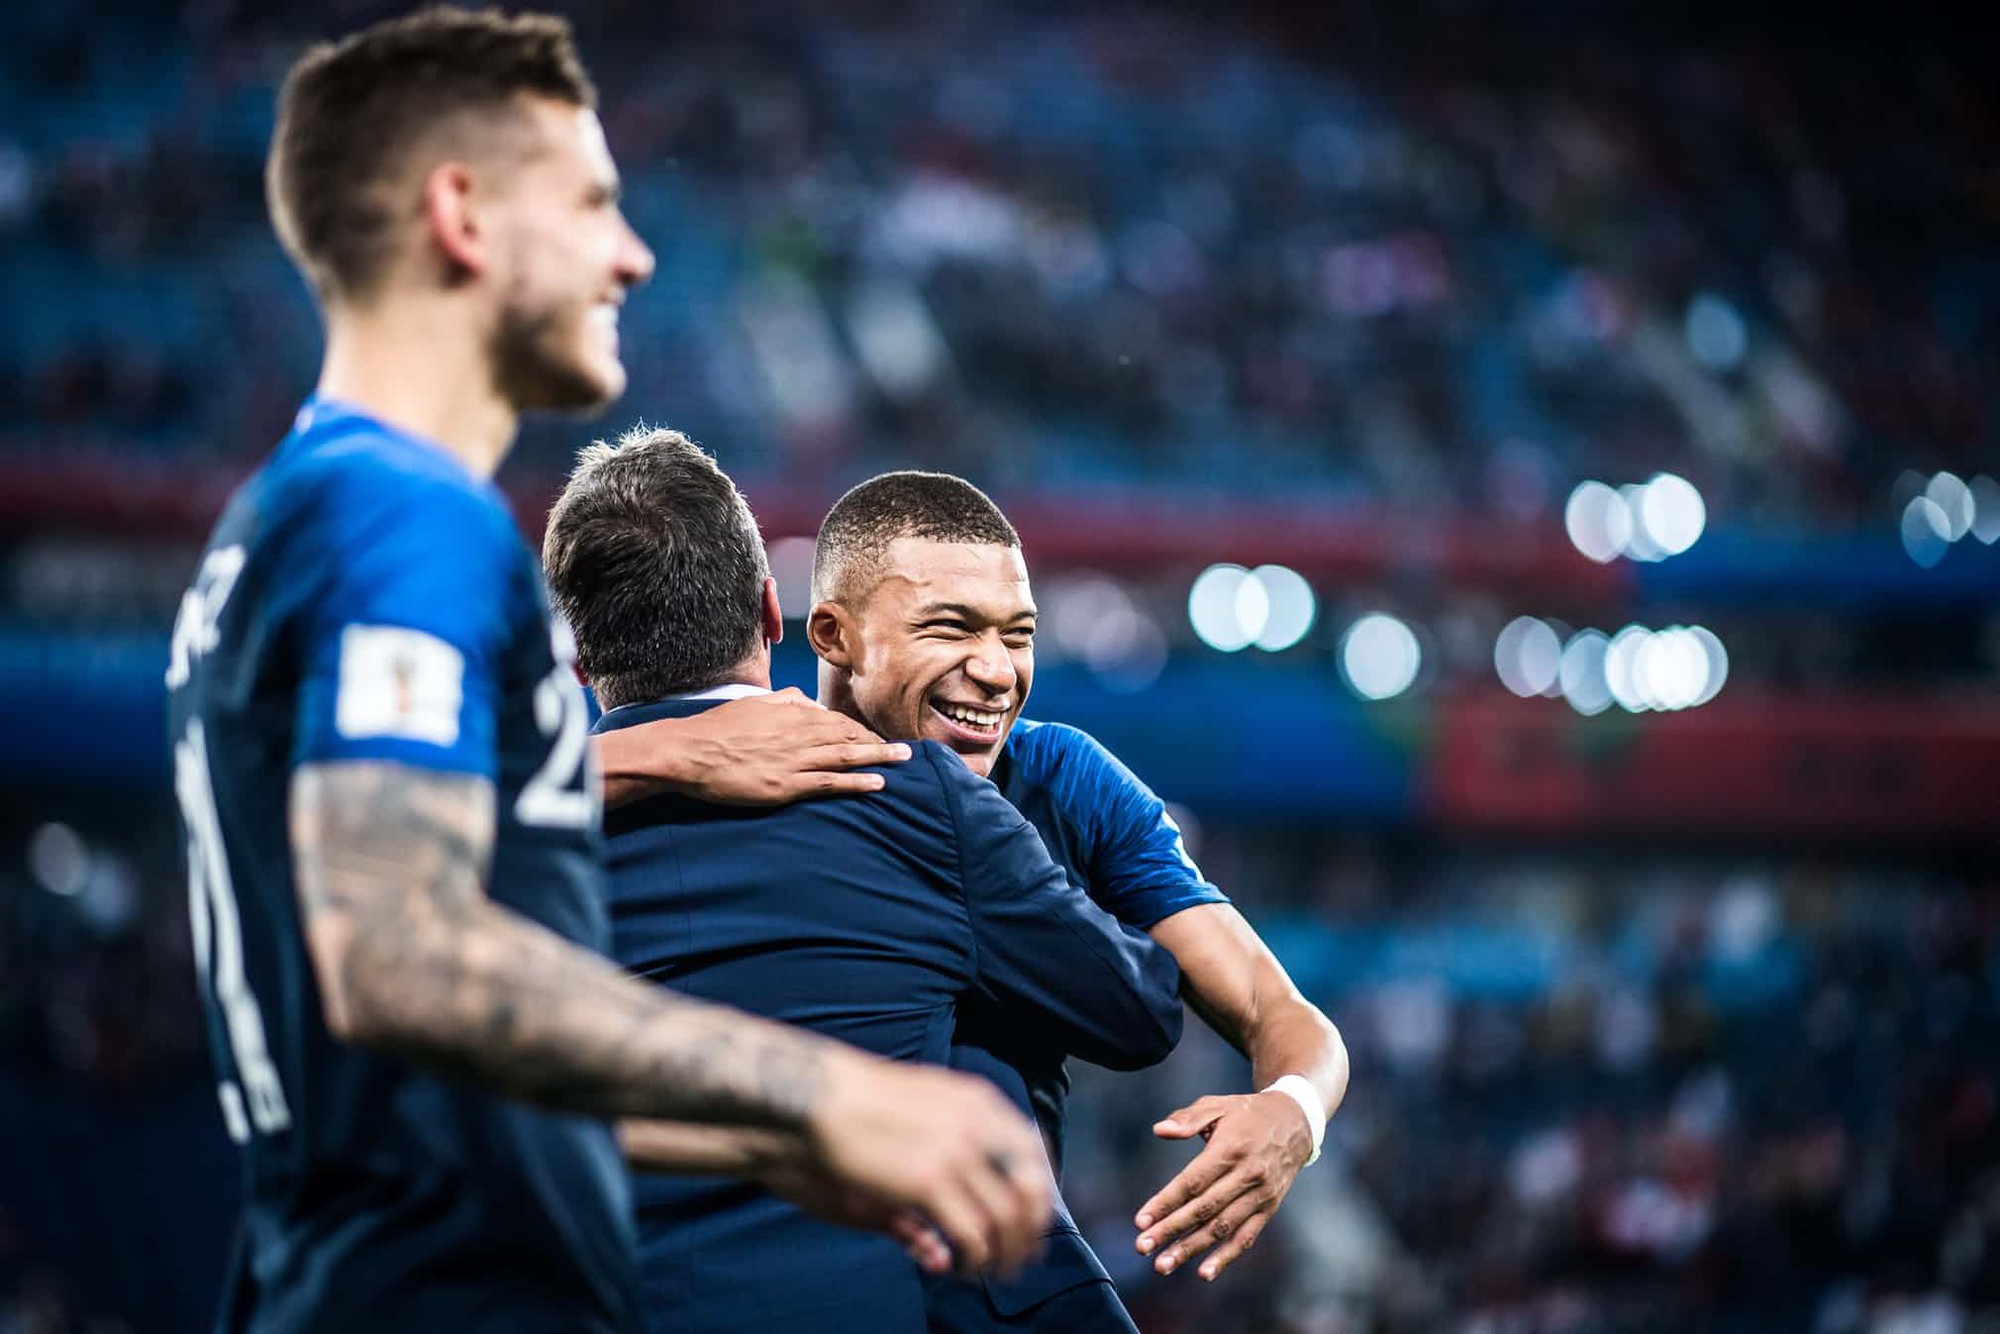 Nhìn lại những khoảnh khắc đẹp nhất World Cup 2018 - Ảnh 1.